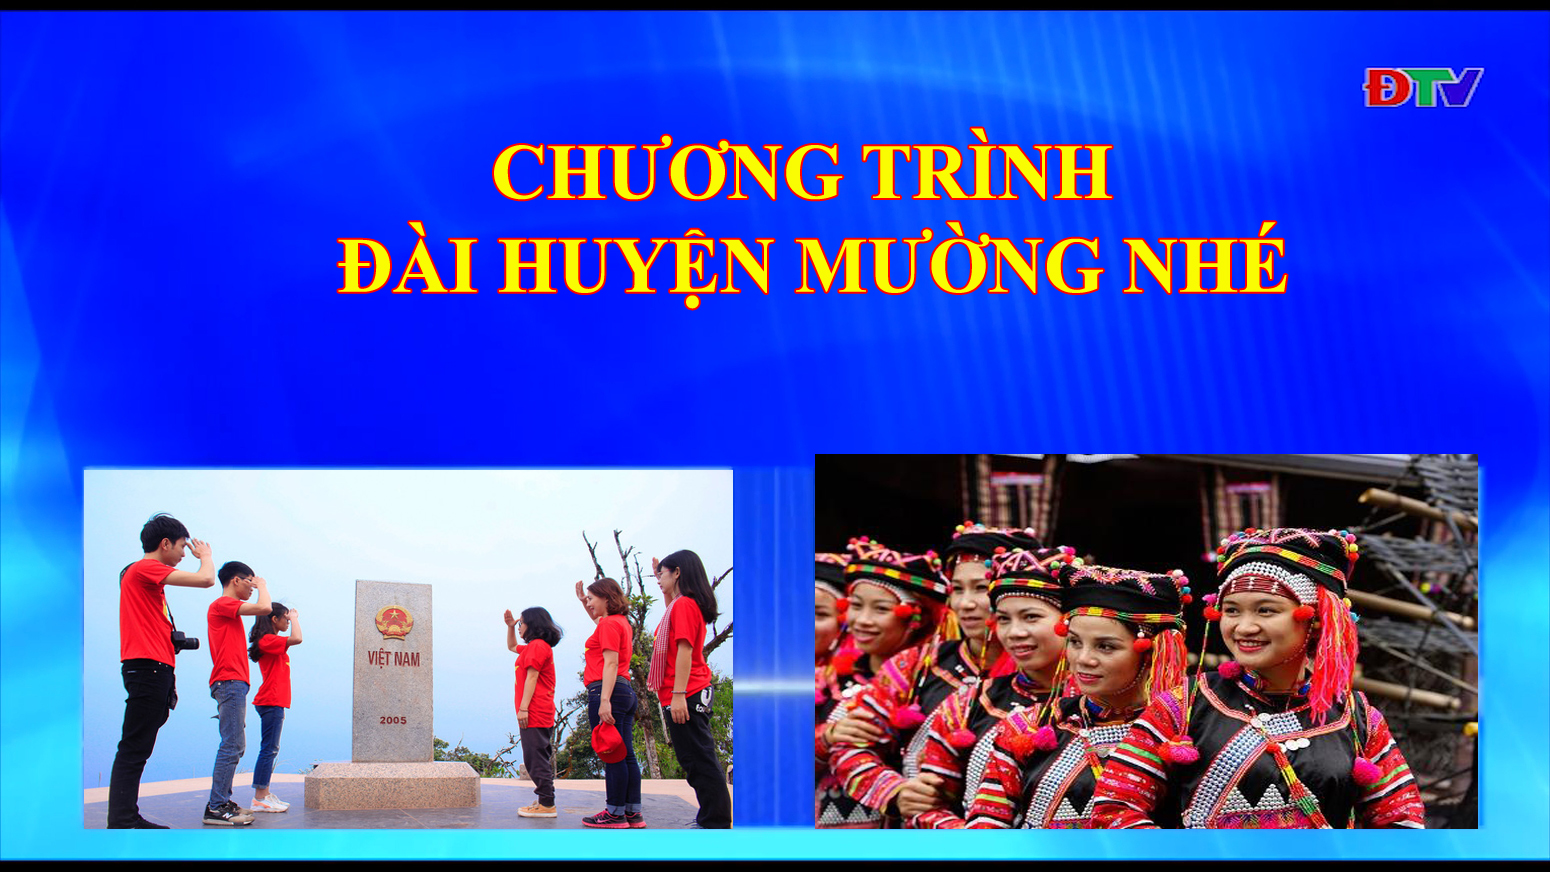 Đài huyện Mường Nhé (ngày 13-02-2020)